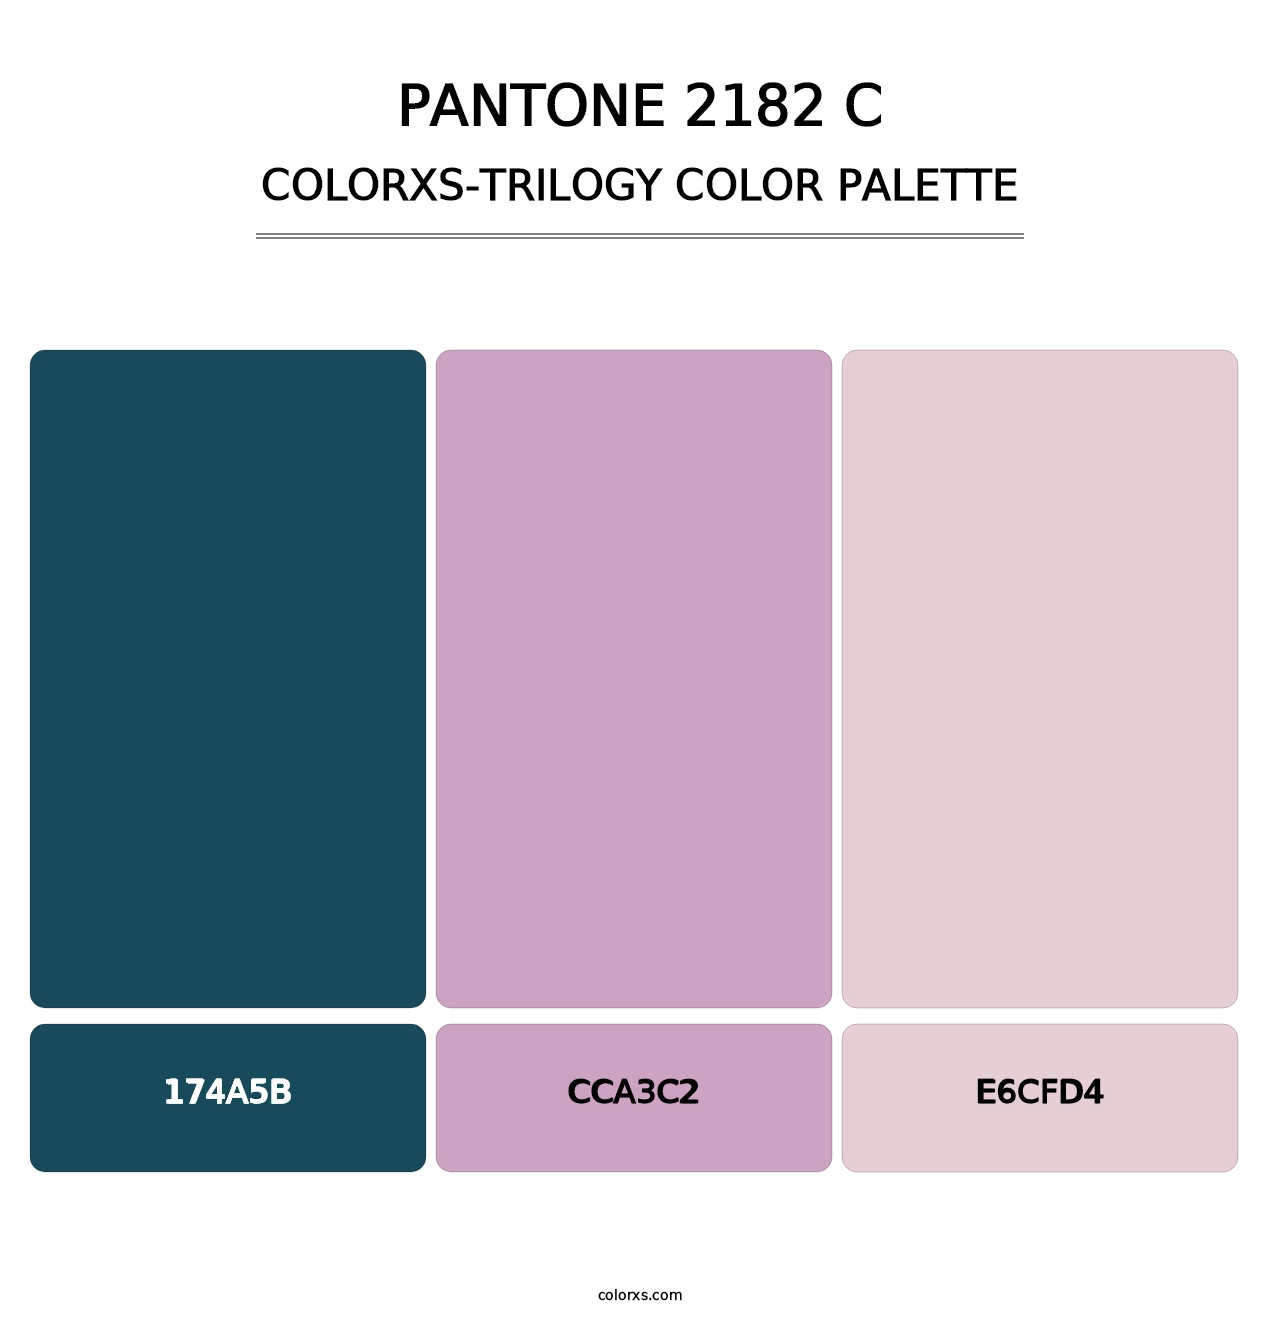 PANTONE 2182 C - Colorxs Trilogy Palette